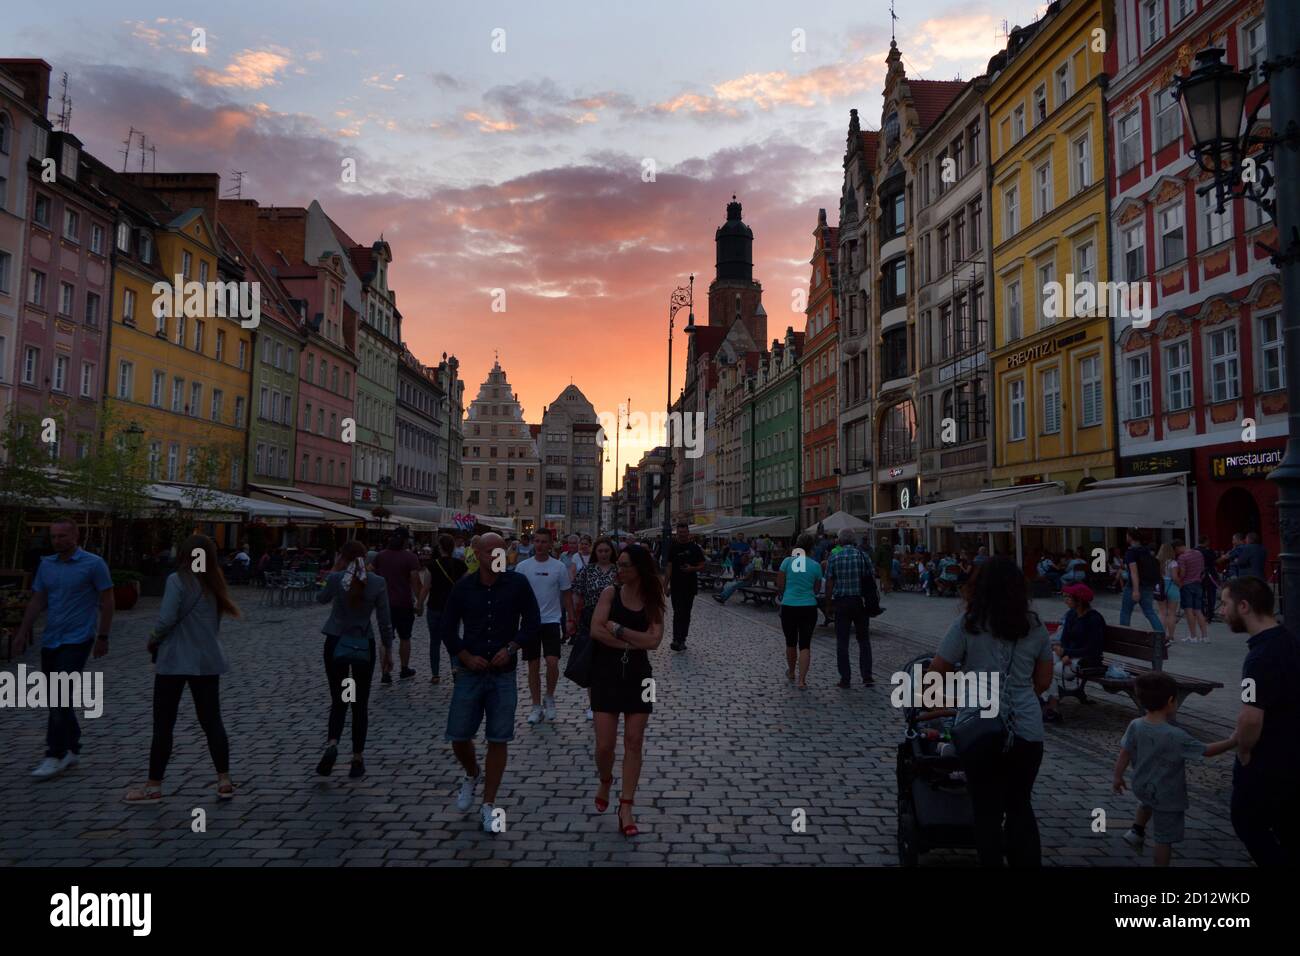 Vista della Piazza del mercato nella città vecchia di Wroclaw (Breslavia), Polonia, Europa con persone a piedi. Punto di riferimento polacco con edifici tradizionali, case i Foto Stock